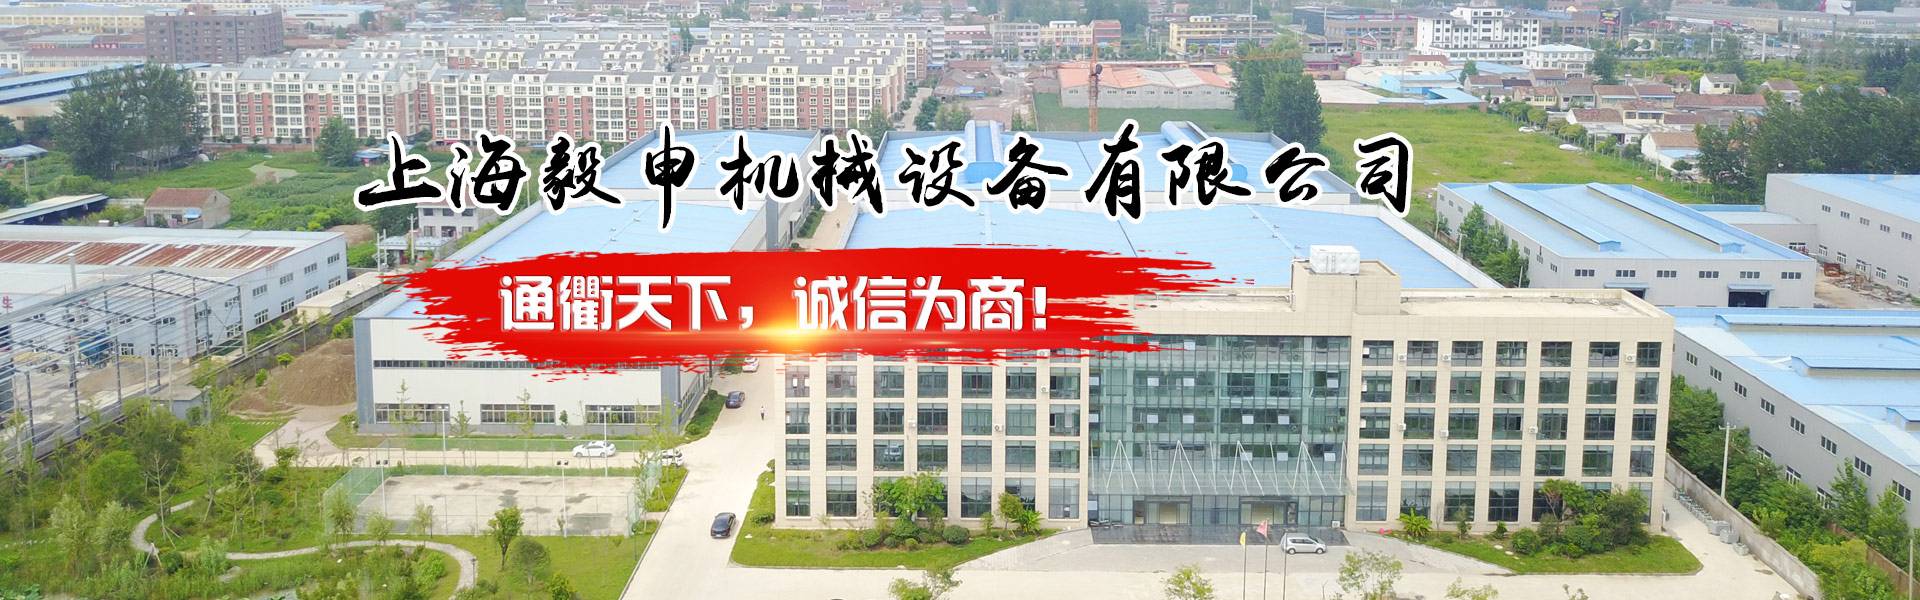 上海毅申机械设备有限公司